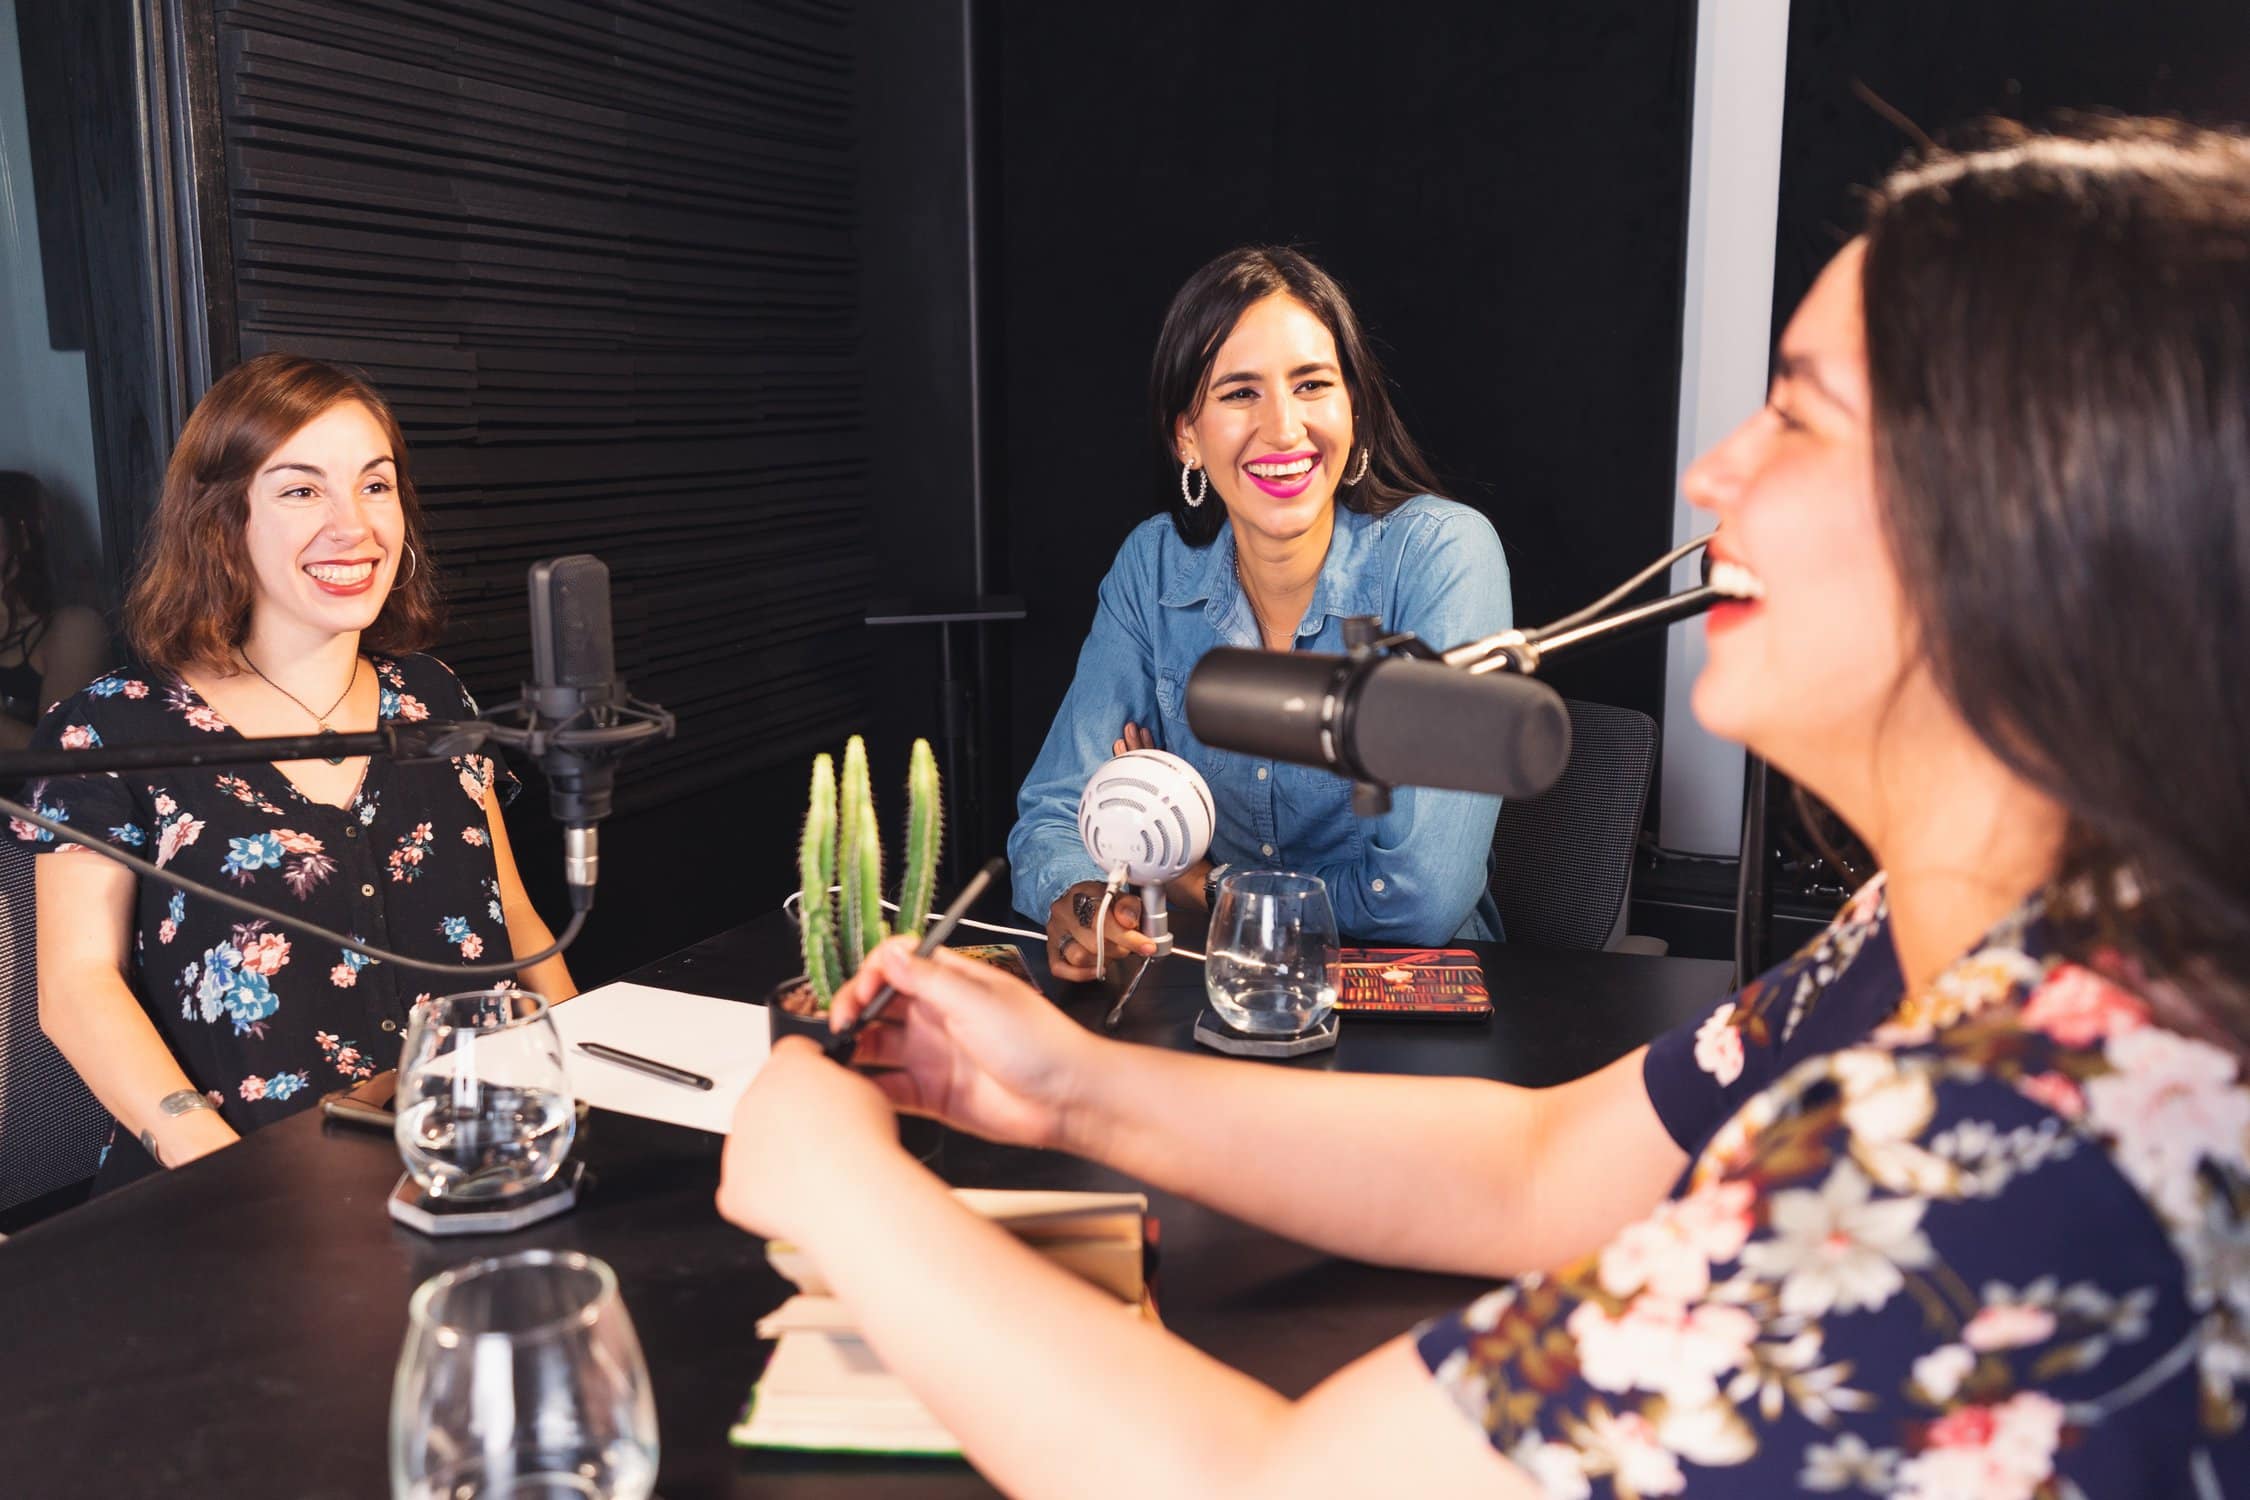 3 junge Frauen sitzen am Tisch und unterhalten sich. Eine von ihnen spricht wie in einem Podcast-Setting in ein Mikrofon.